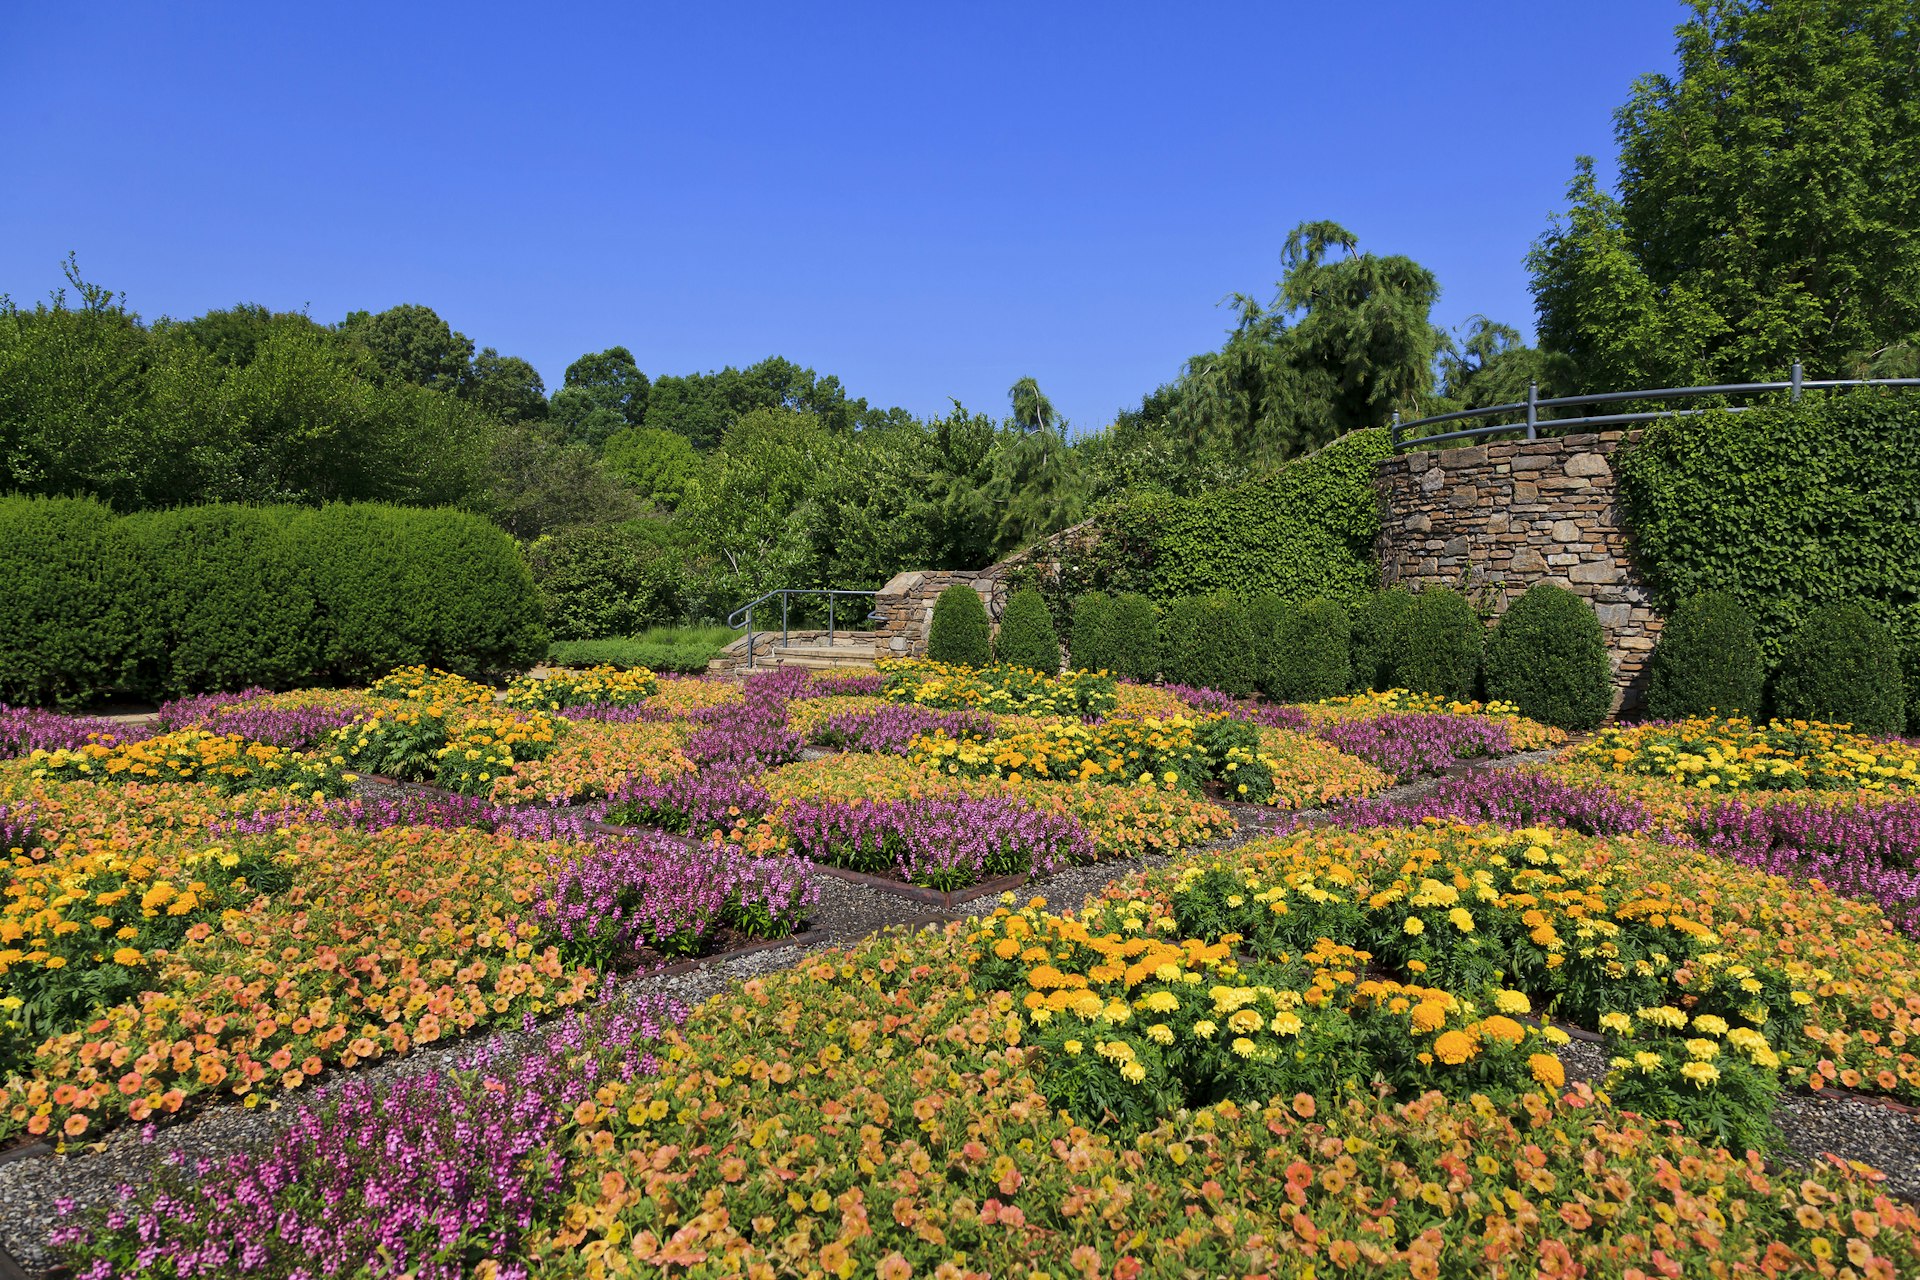 The Quilt Garden at the North Carolina Arboretum